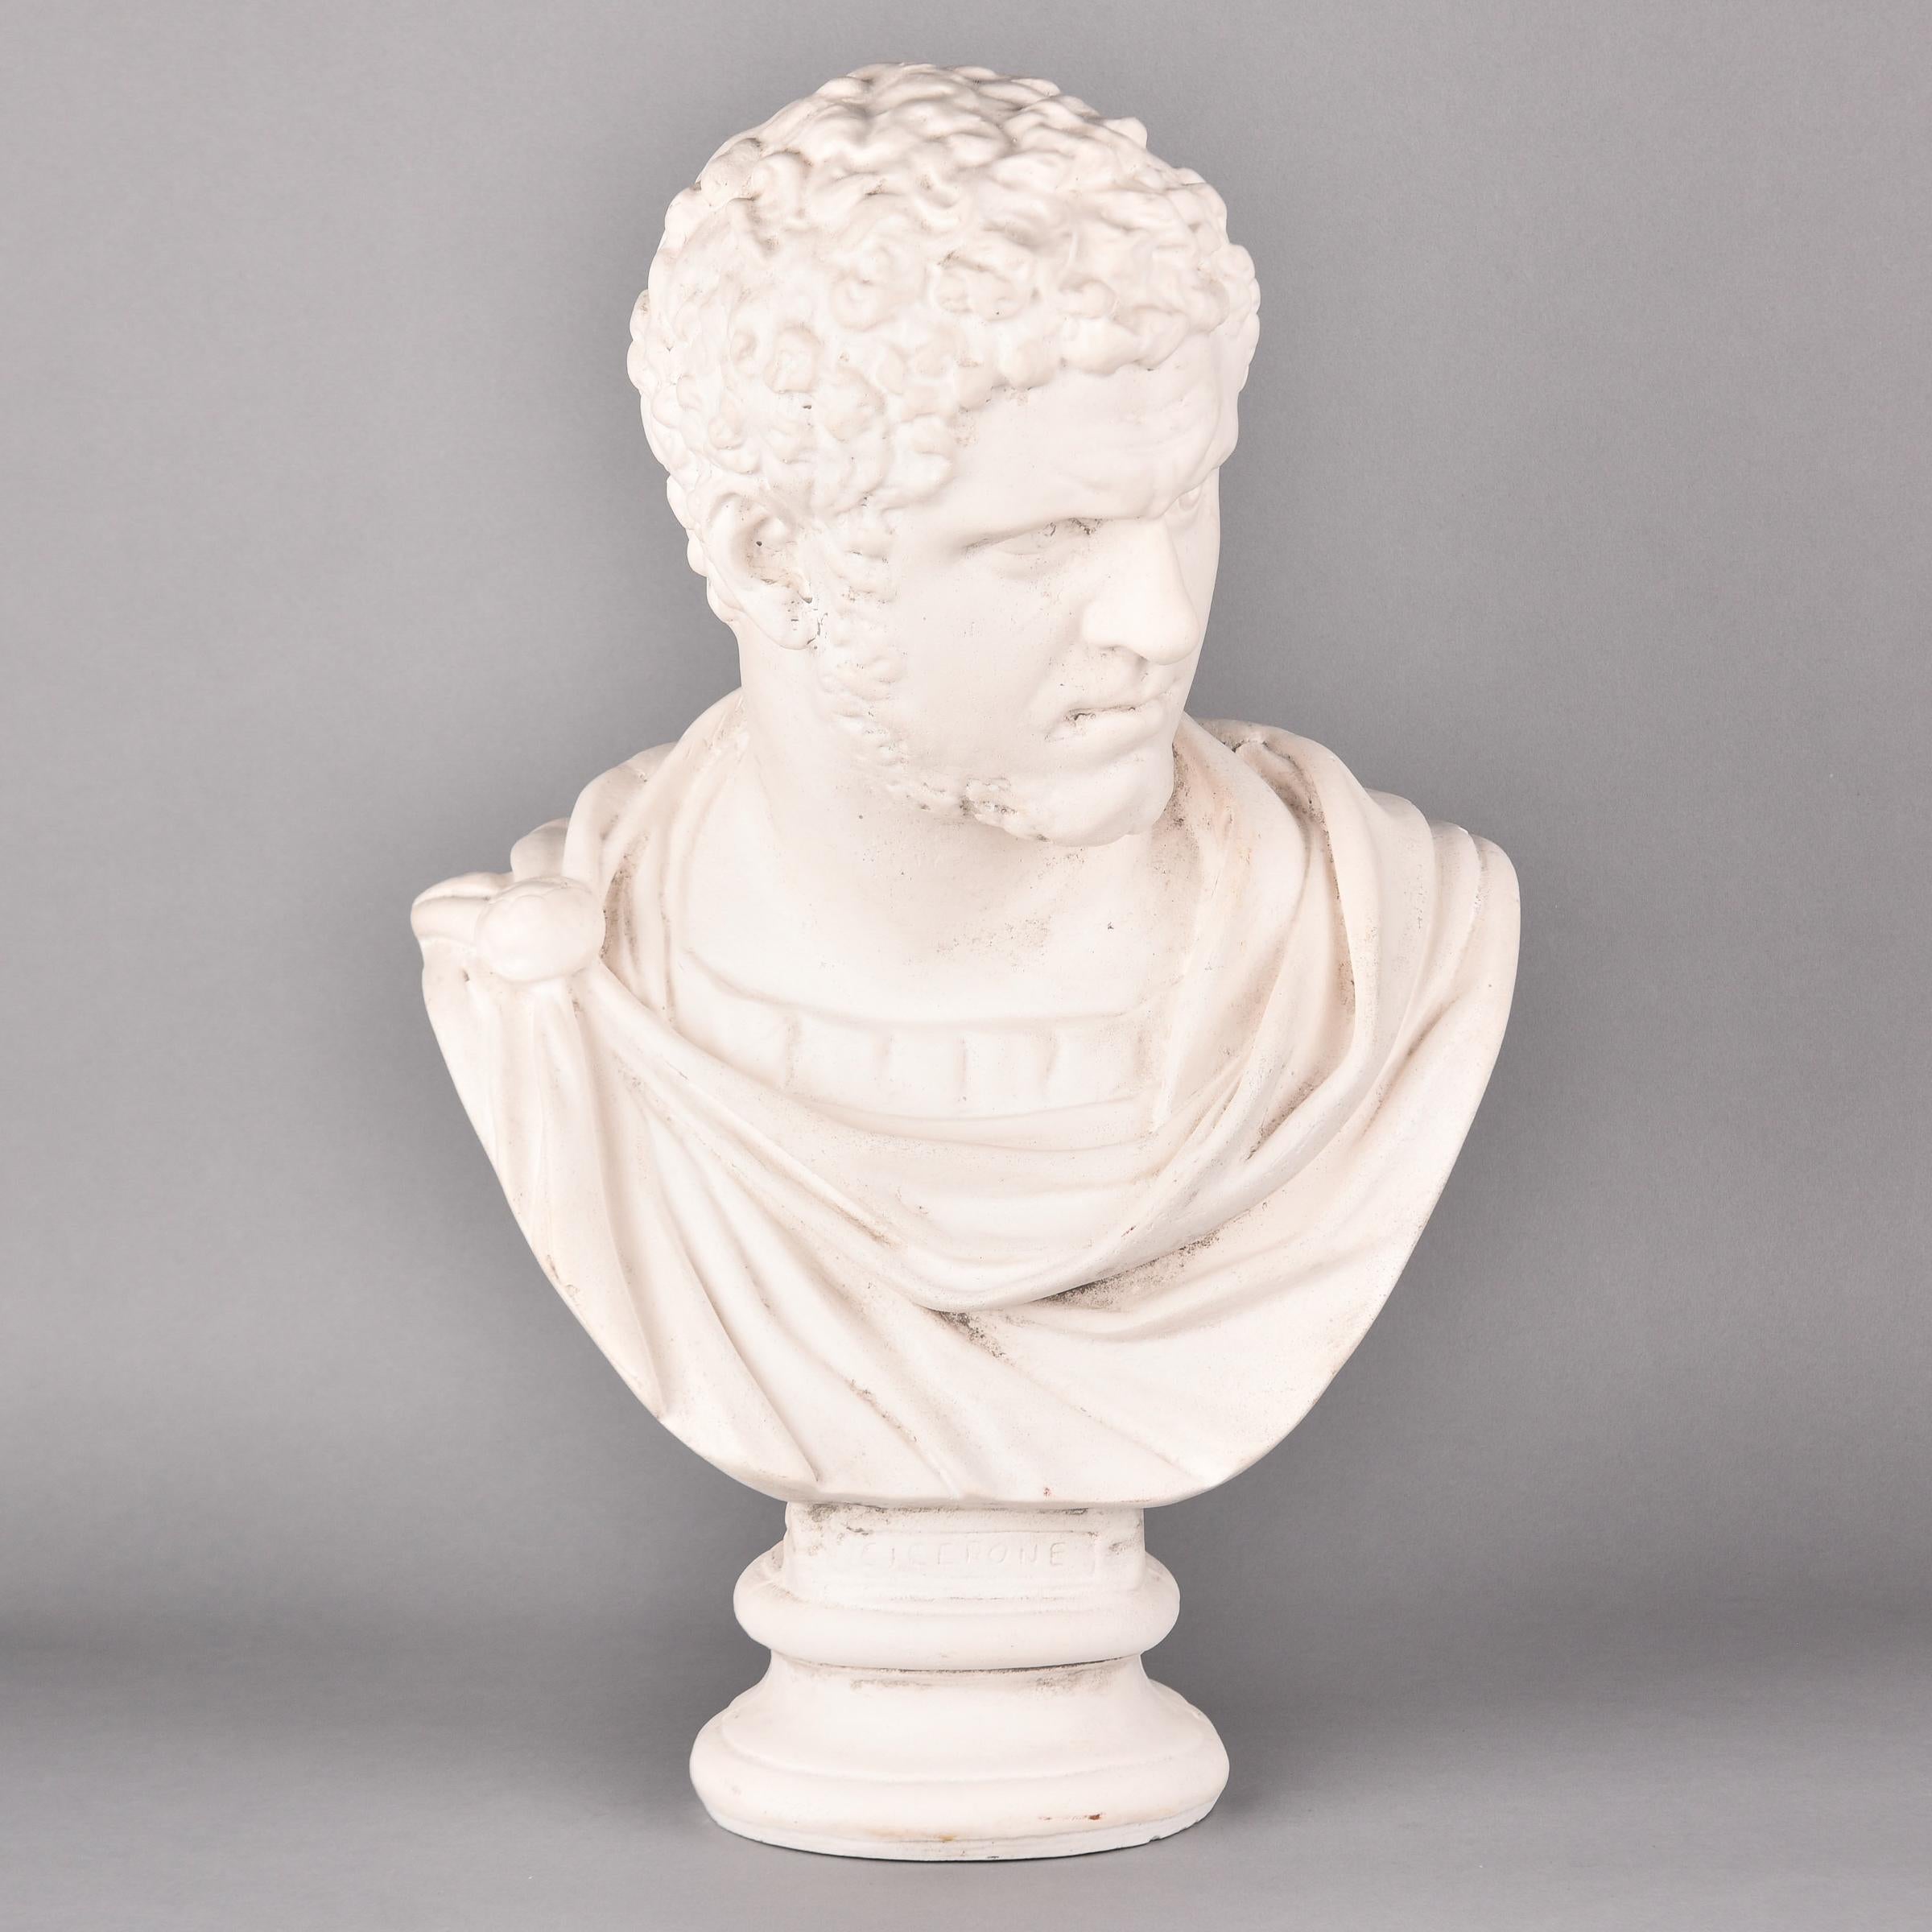 Trouvé en Angleterre, ce buste composite en plâtre vintage de Marcus Cicero date des années 1980. Le buste romain classique est une pièce intemporelle. Fabricant inconnu. Très bon état vintage. 